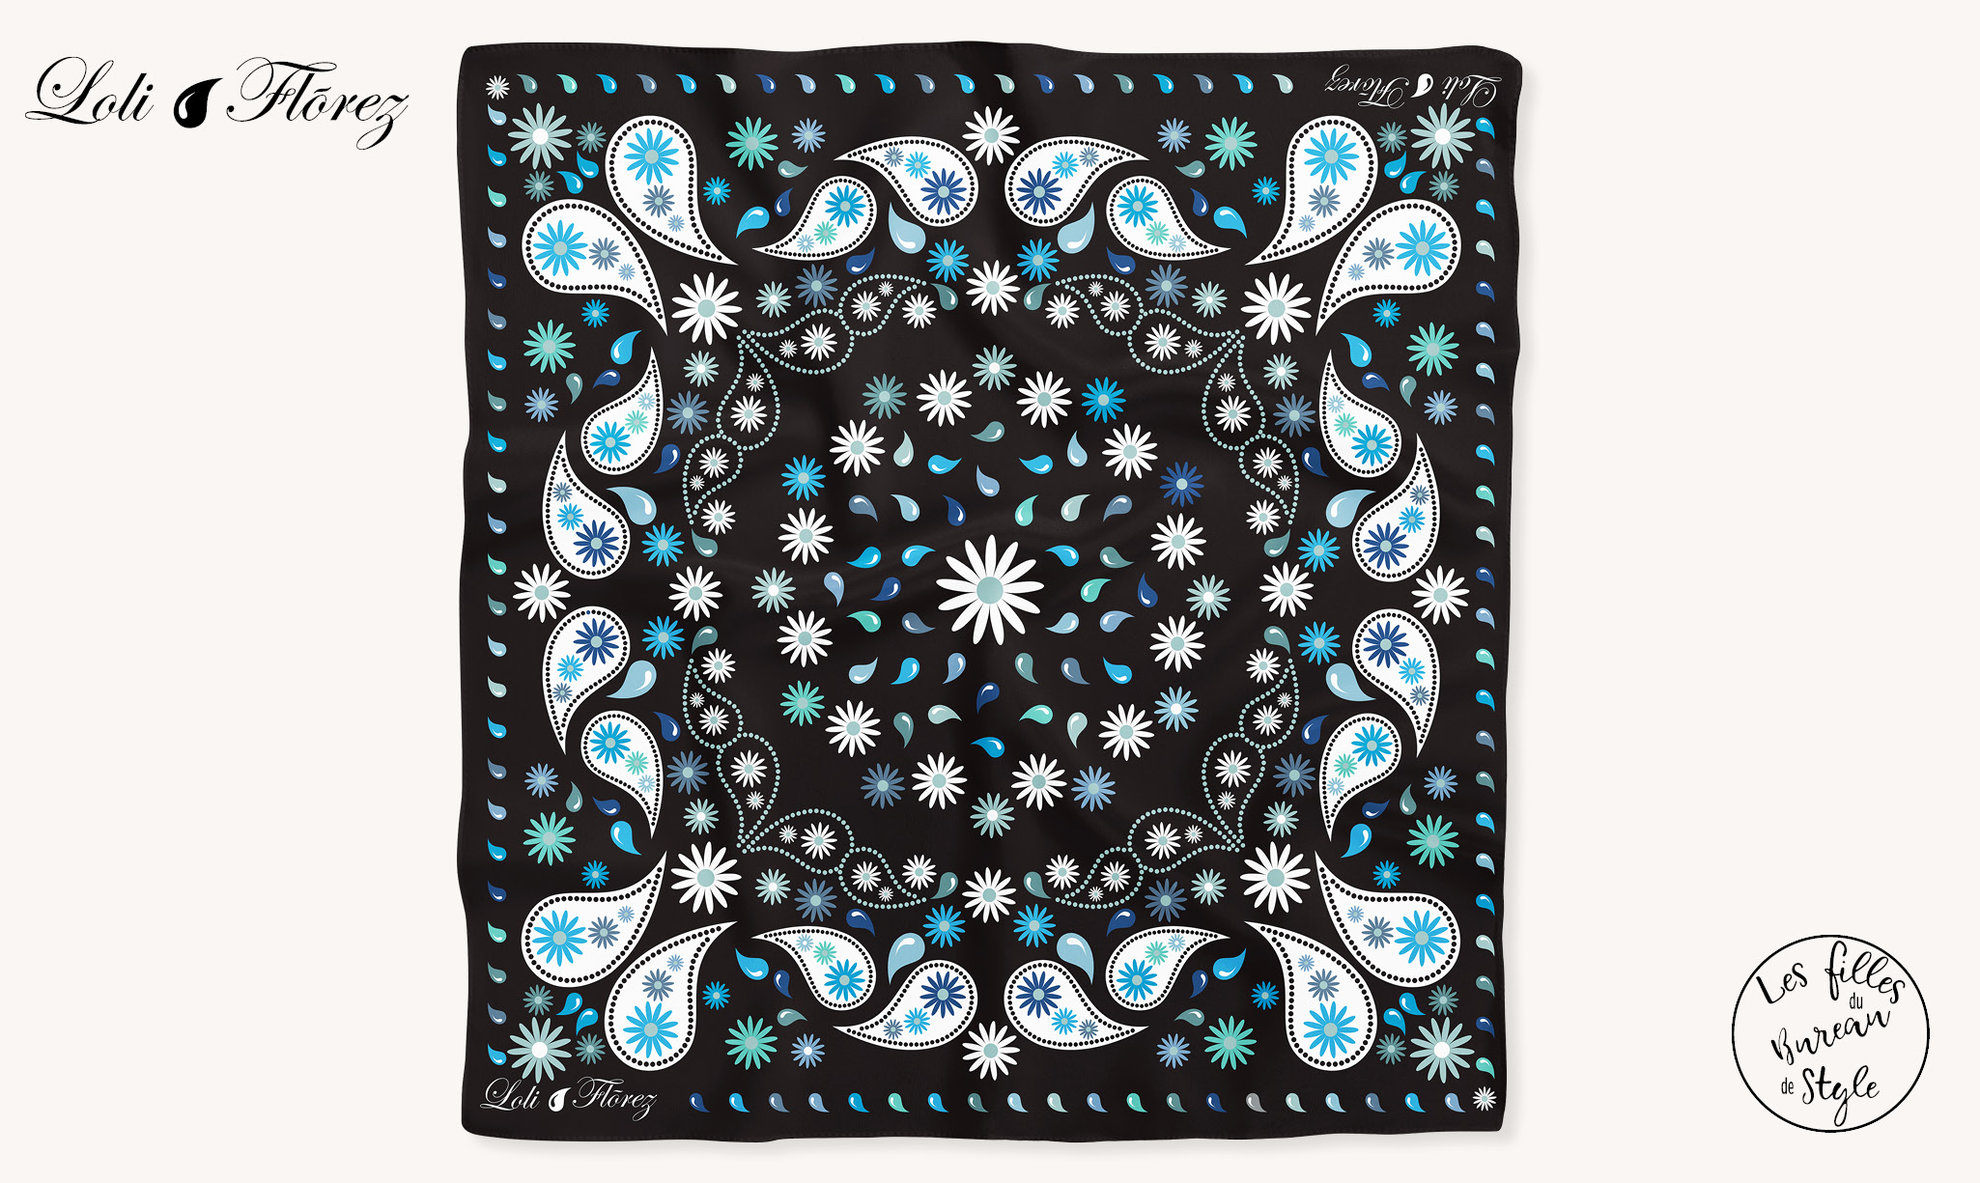 Création dessin foulard, collection homme Loli Flõrez. "Calimity H Flowers", coloris denim-noir.